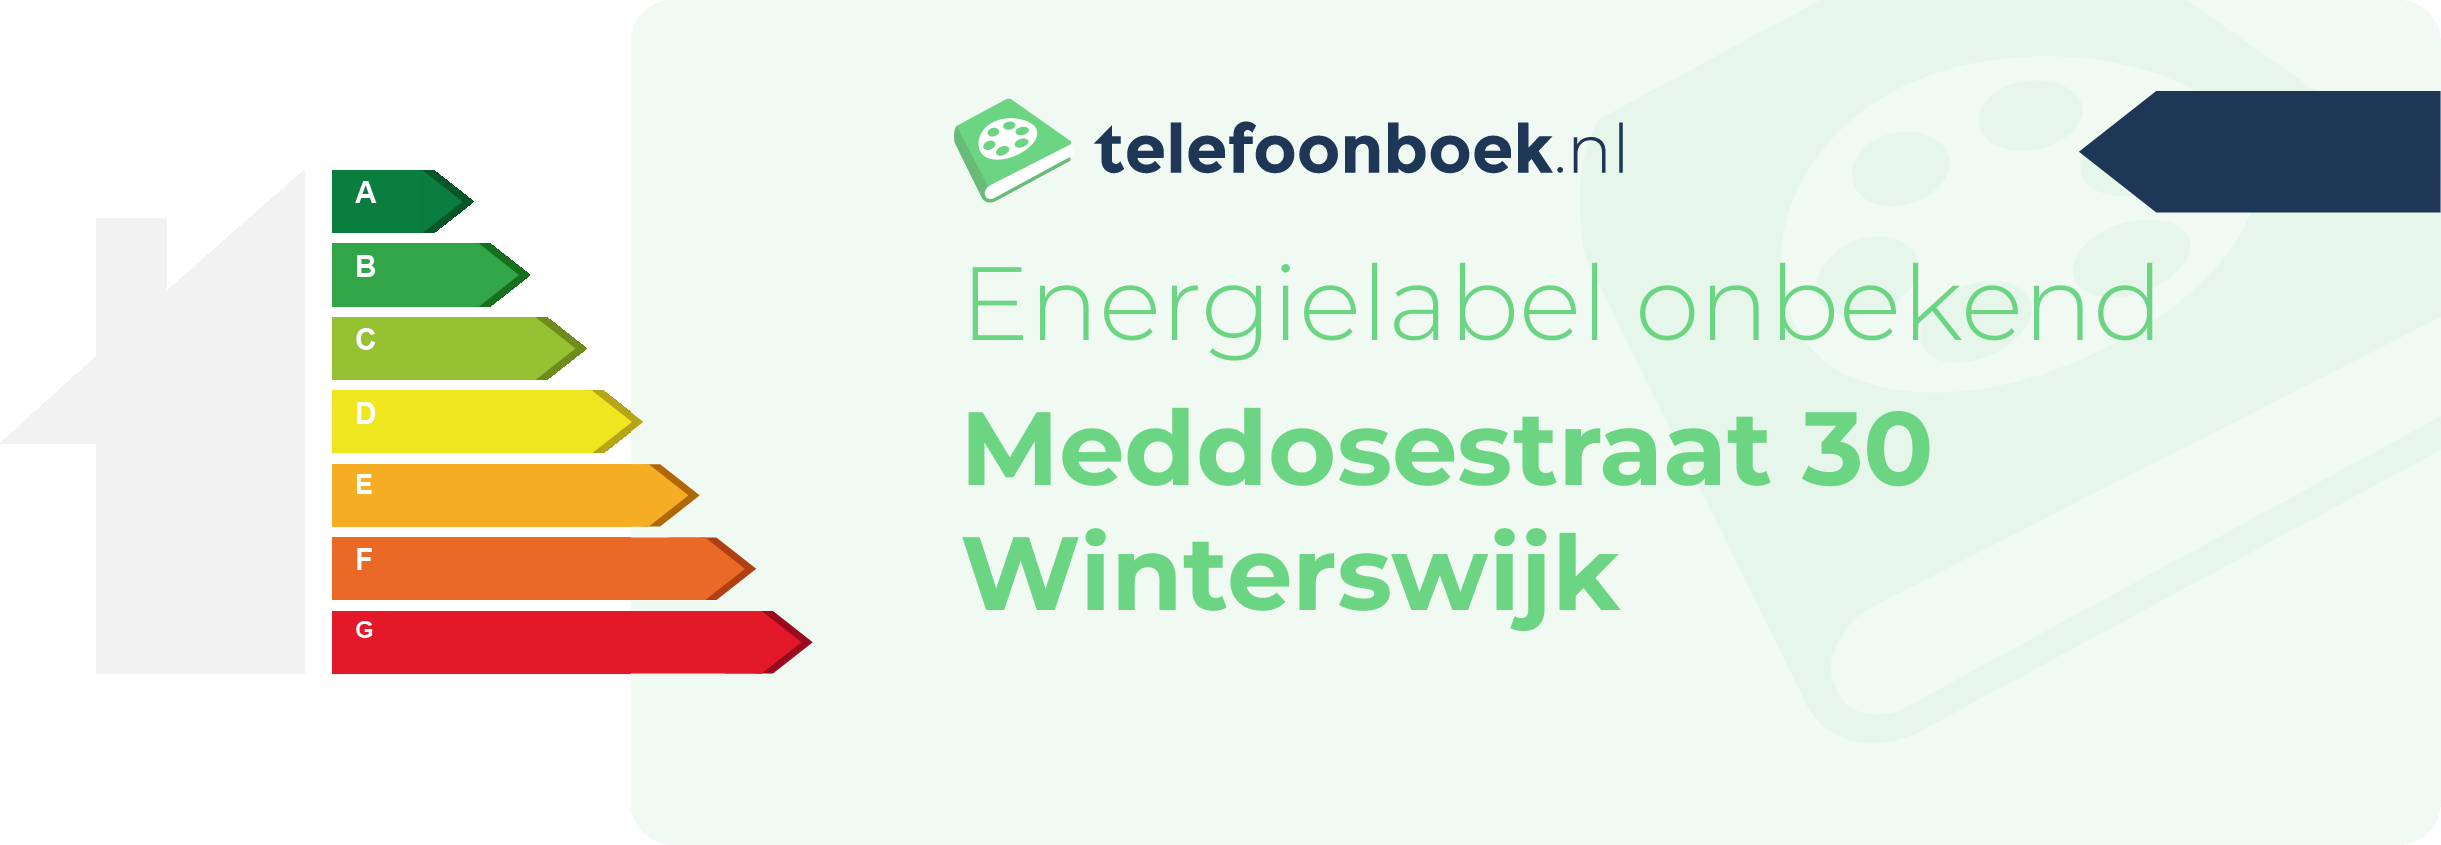 Energielabel Meddosestraat 30 Winterswijk